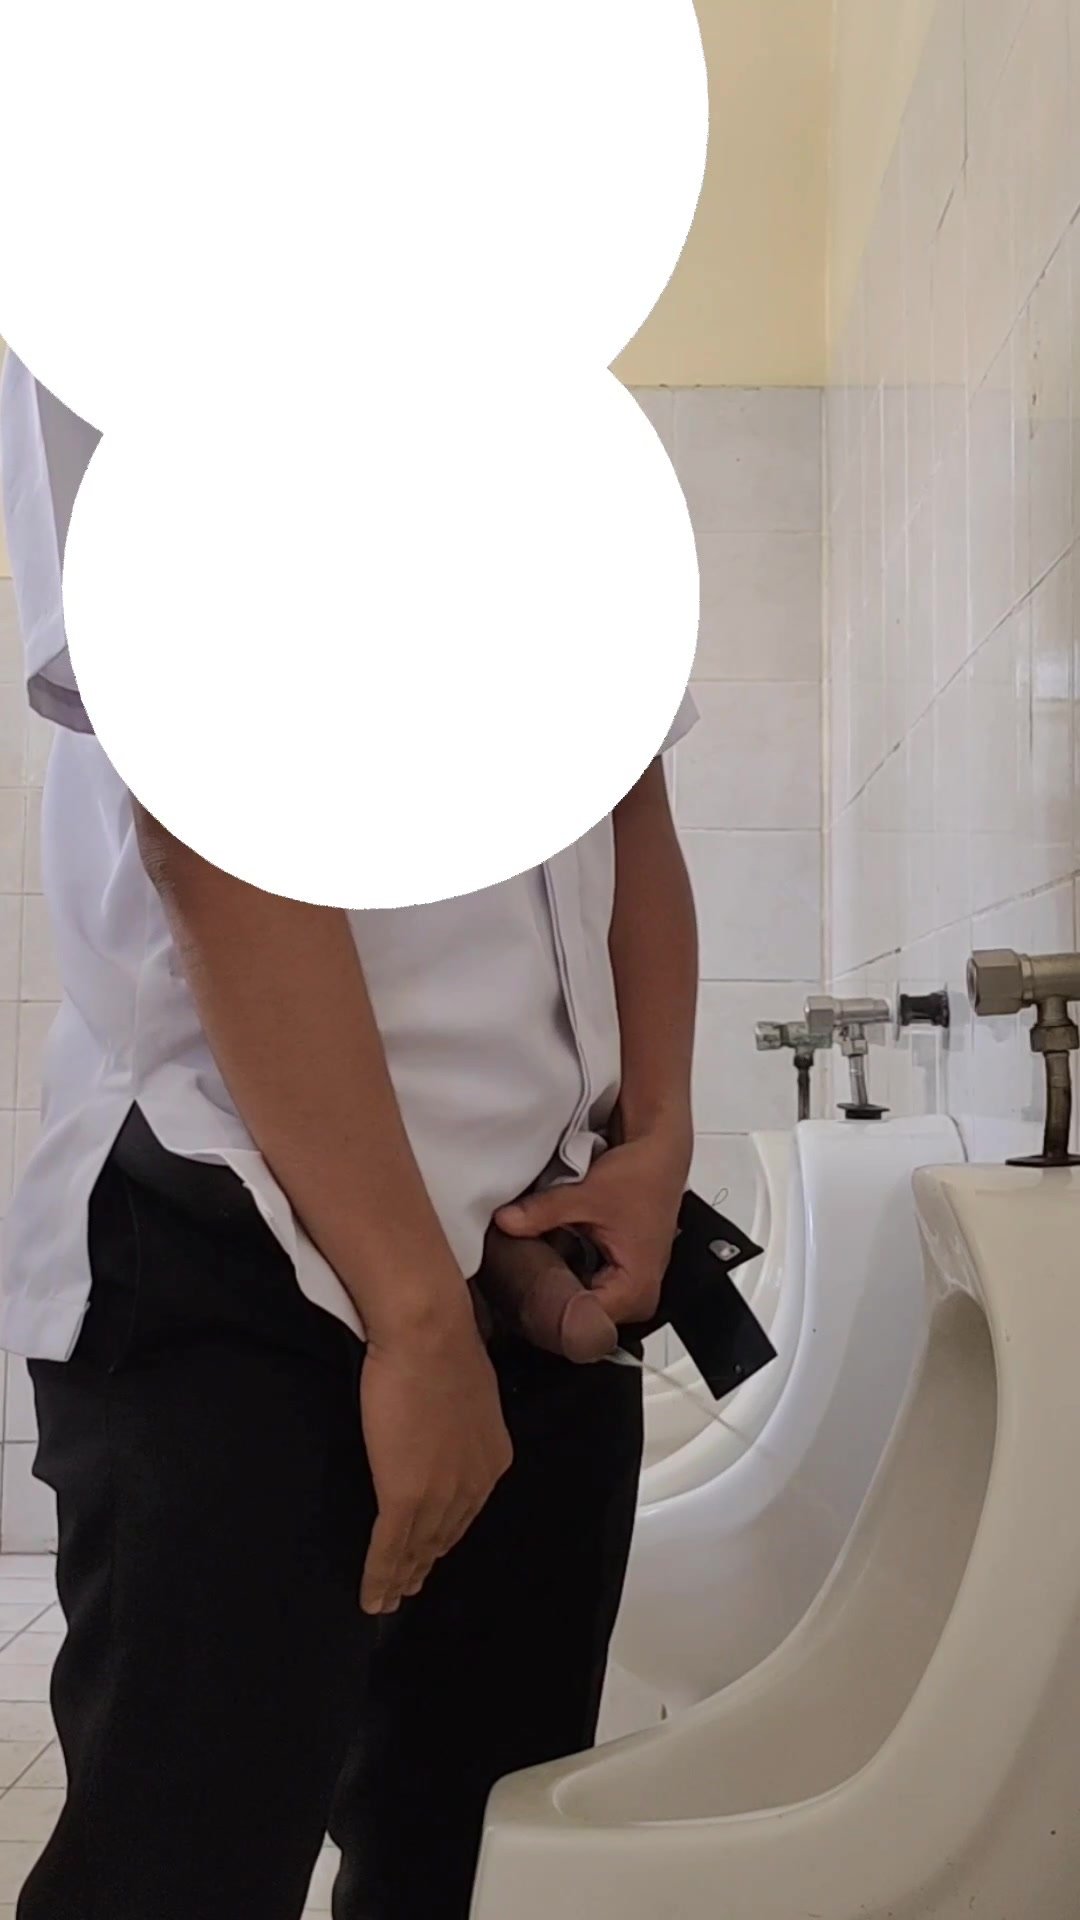 piss and cum in public men's restroom